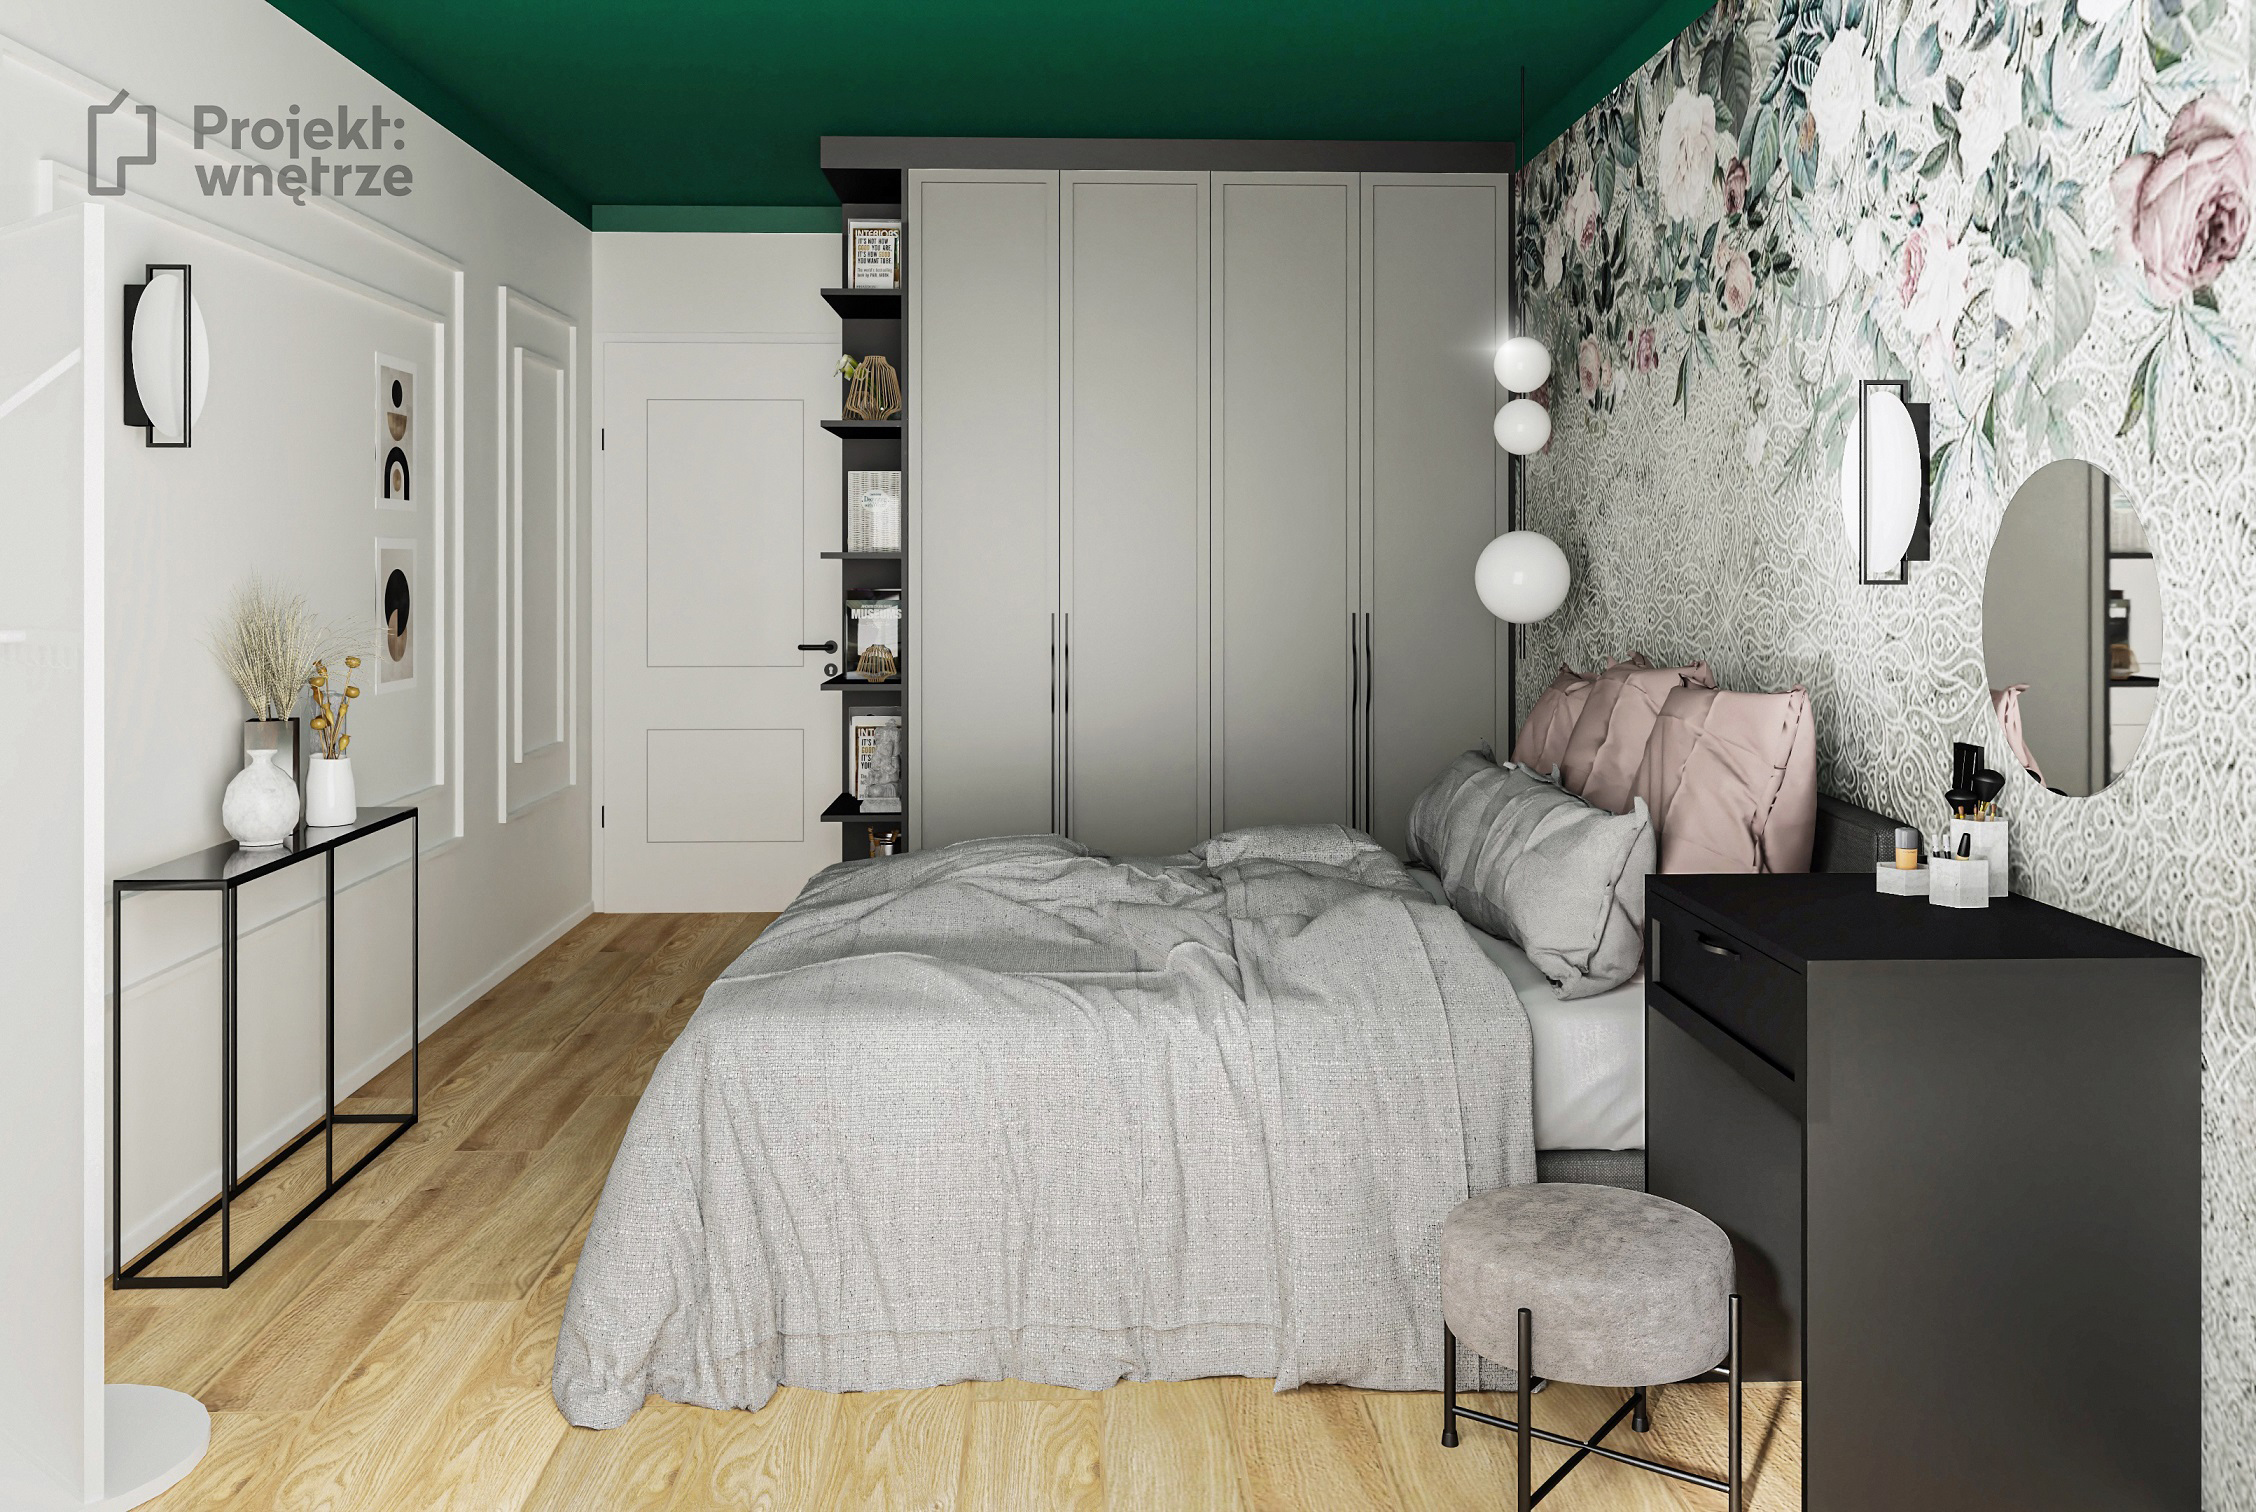 Projekt wnętrze projekt sypialni zieleń szarość drewno czerń tapeta sztukateria toaletka Ikea Zfabryki - projektowanie wnętrz online Warszawa